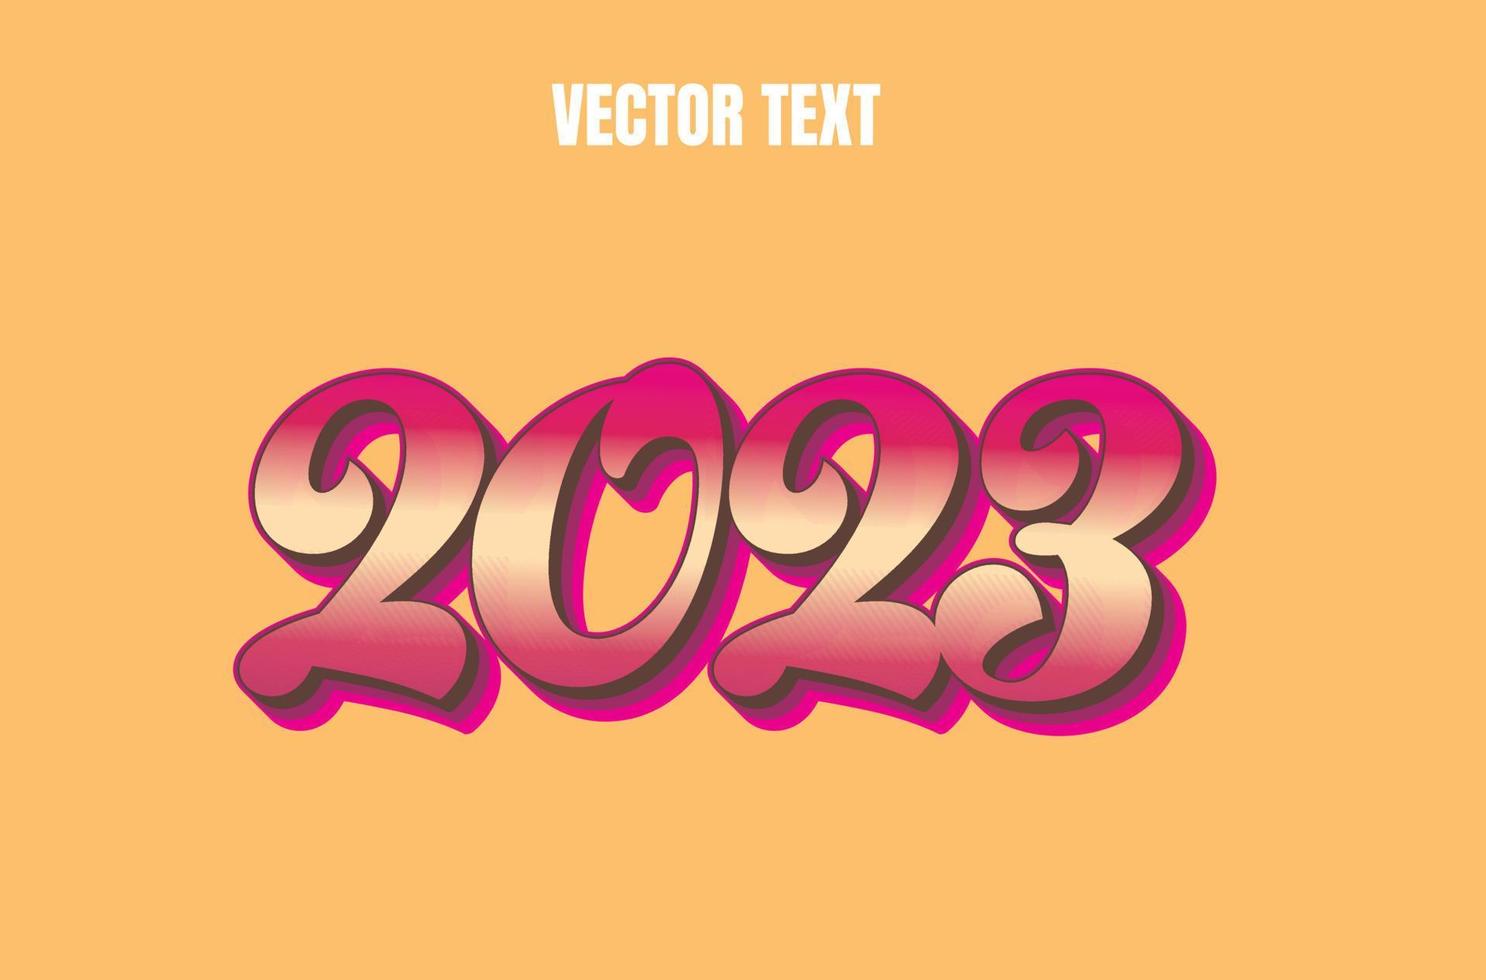 2023 bearbeitbarer Vektortexteffekt vektor